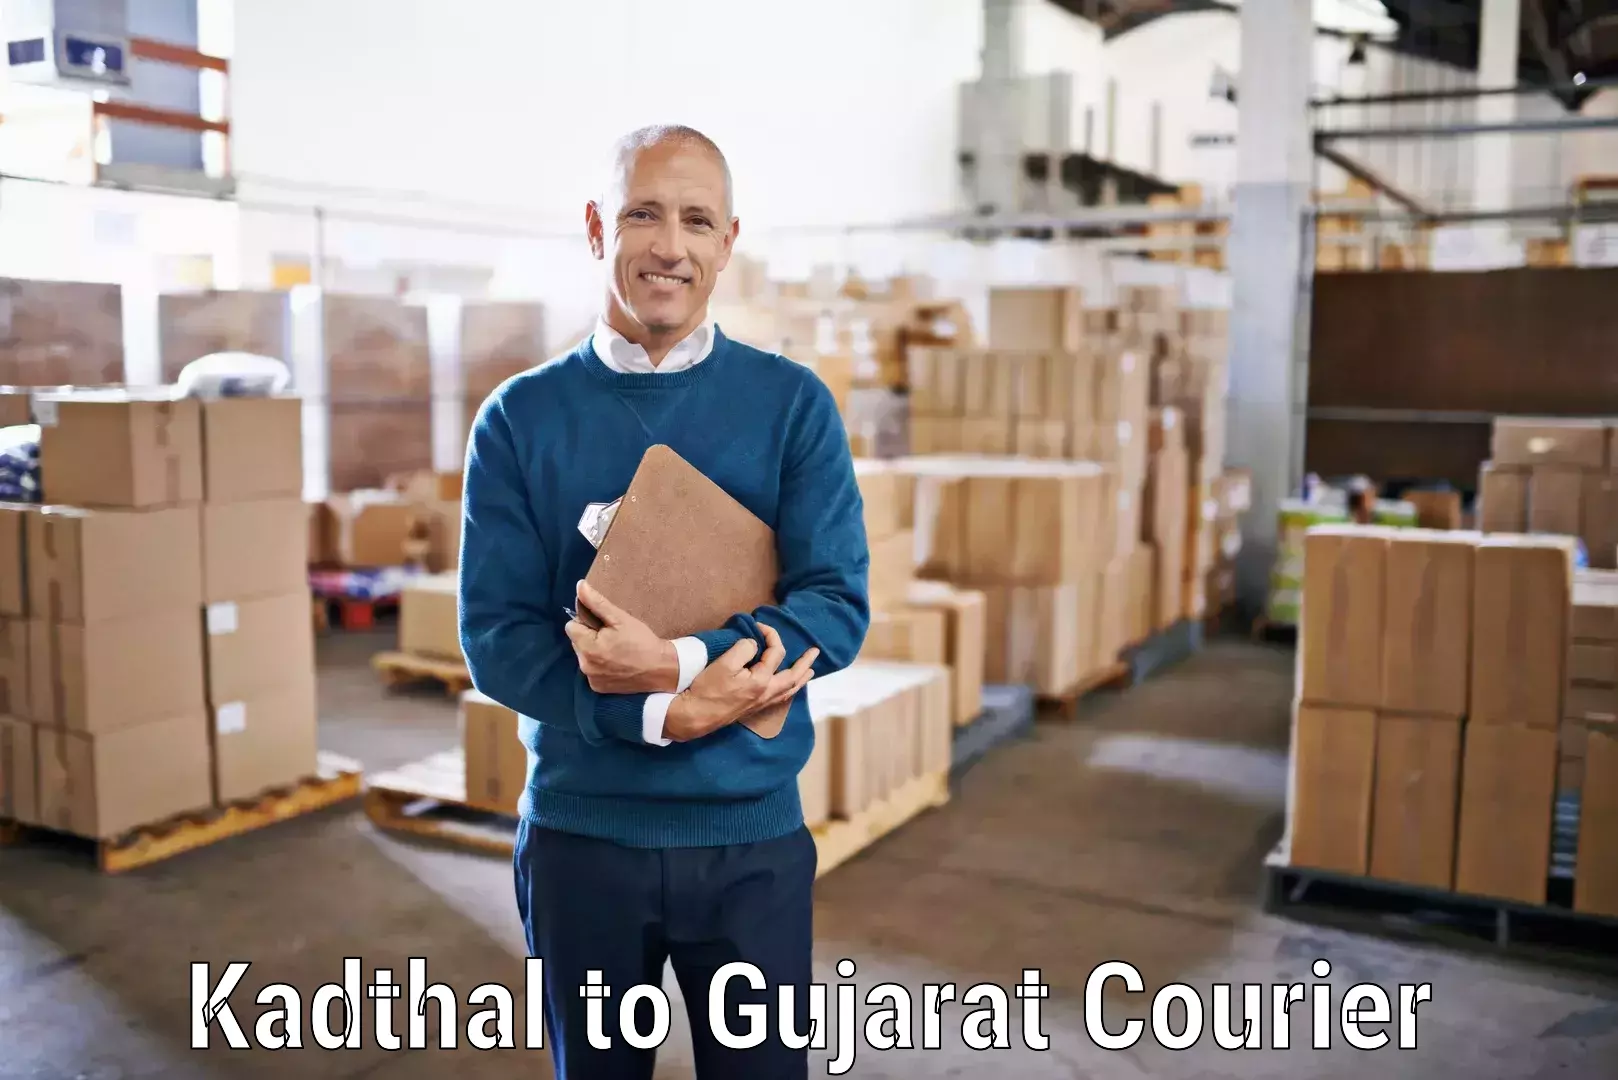 Regular parcel service Kadthal to Gondal